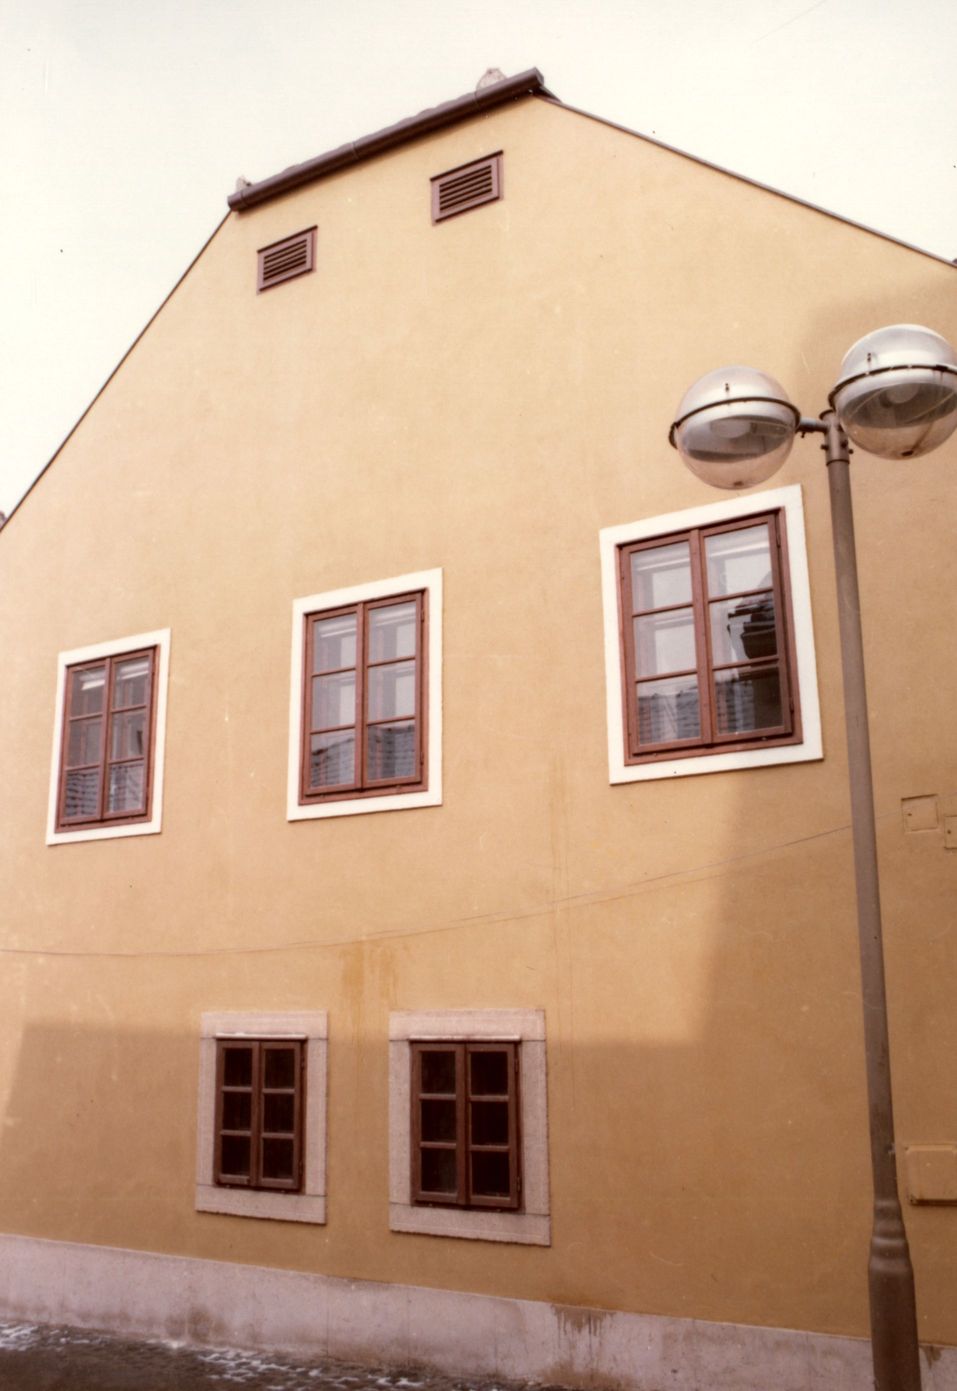 Pécs Sallai utcai házfelújítás